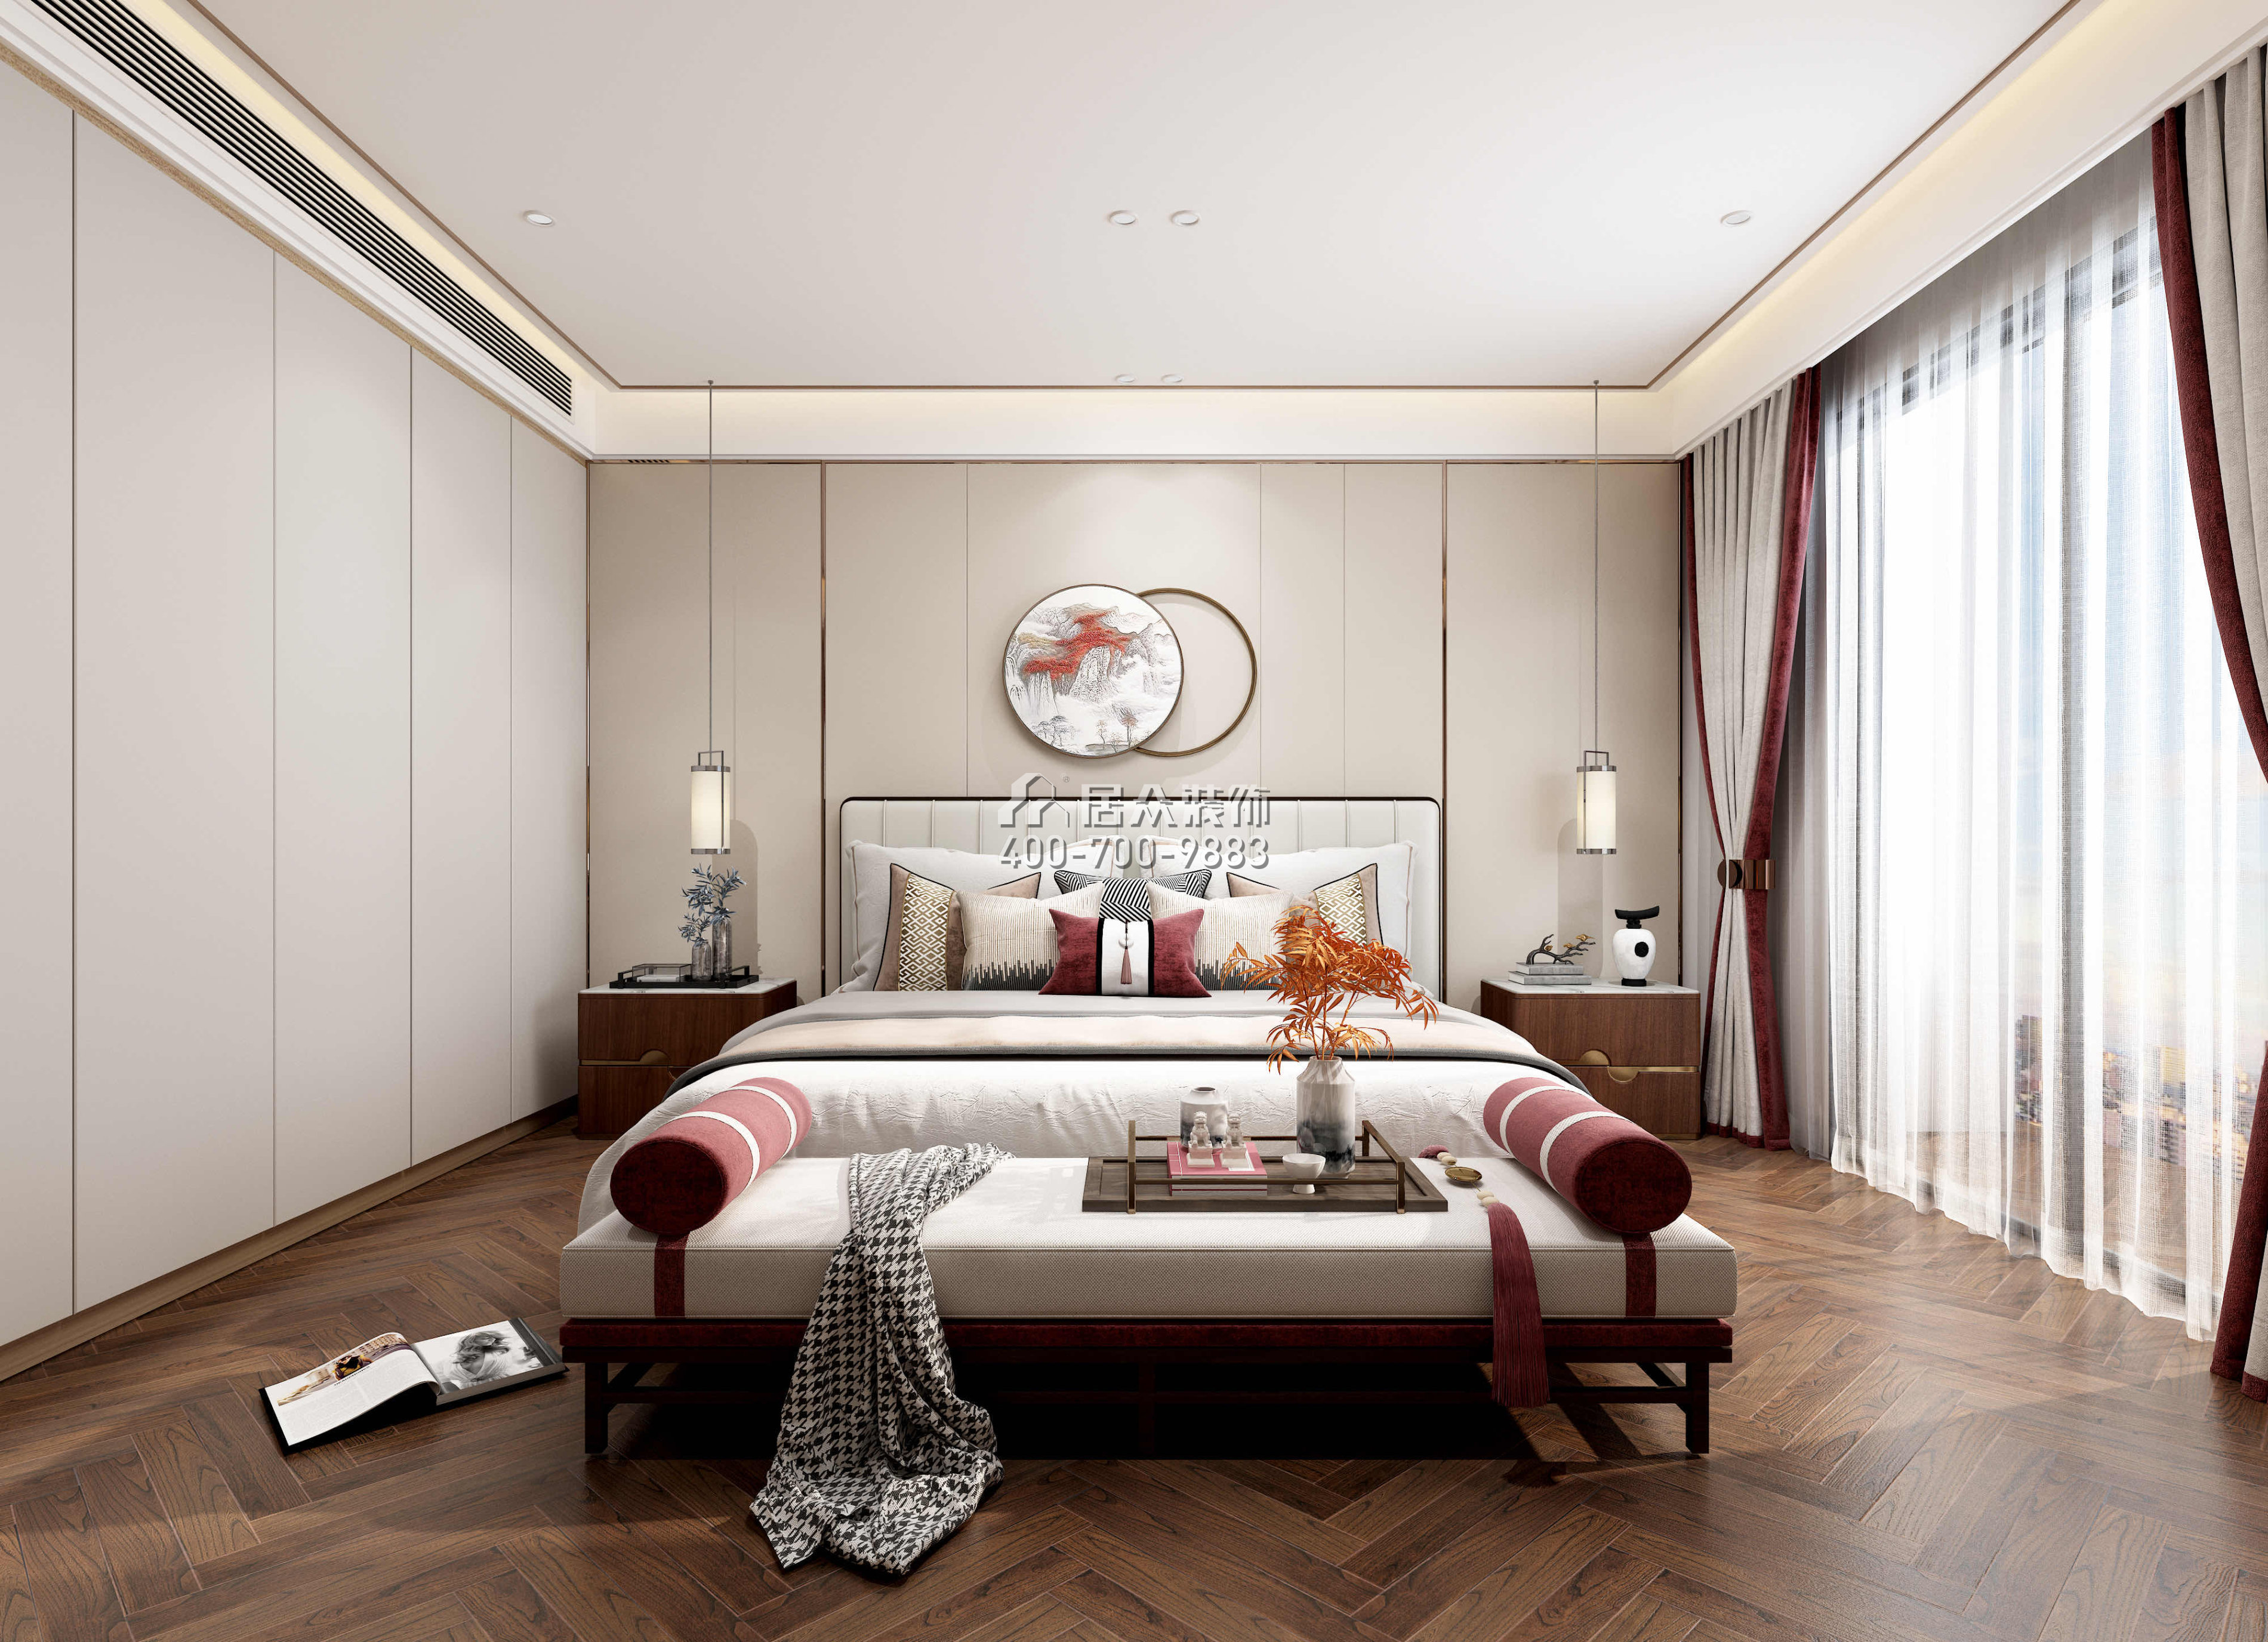 中旅国际公馆180平方米中式风格平层户型卧室装修效果图